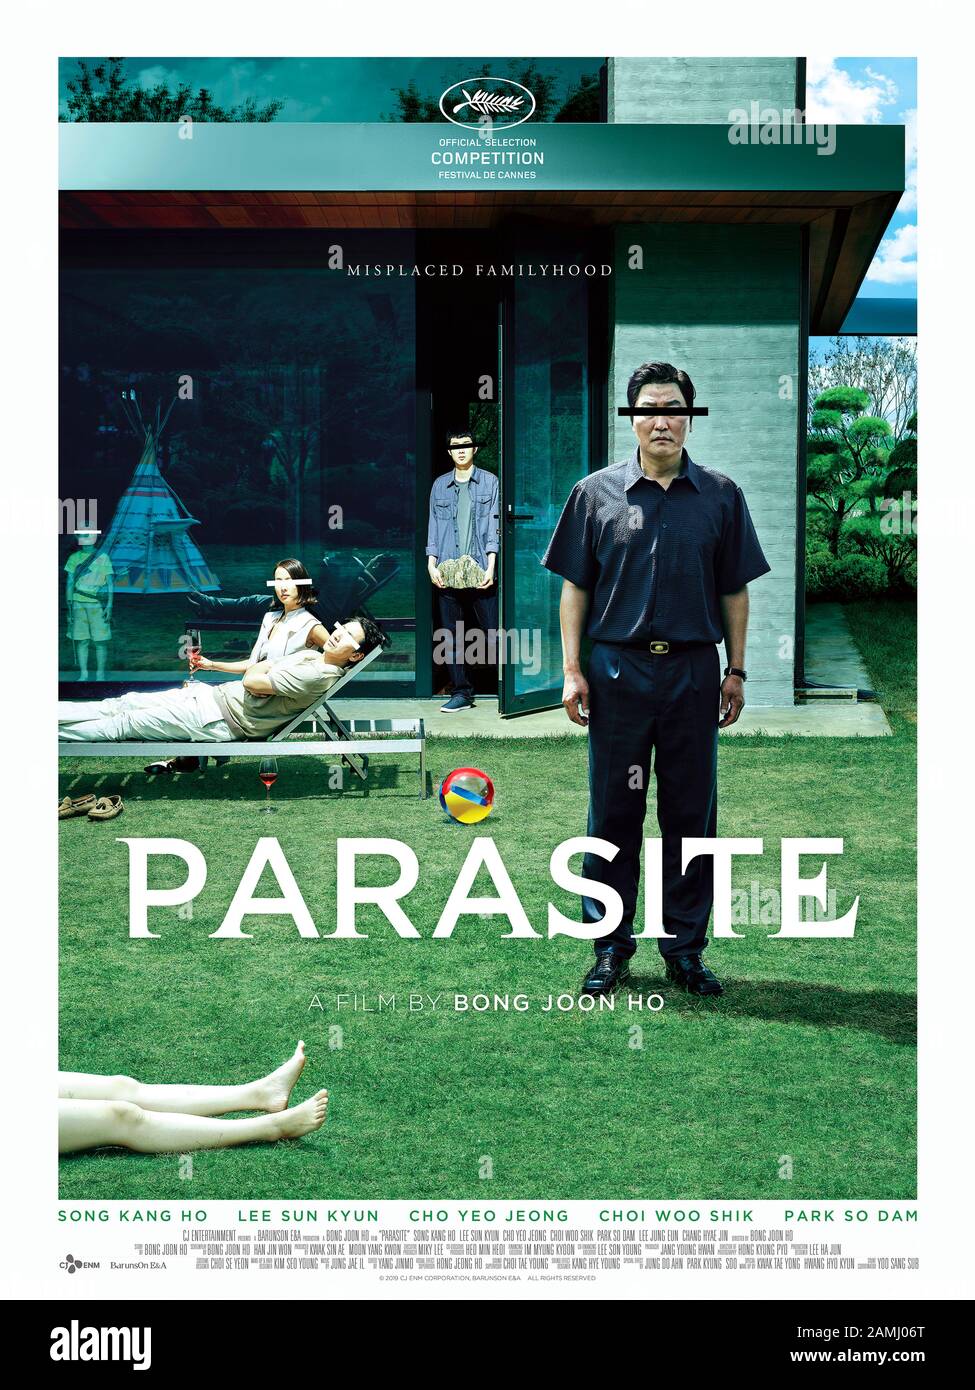 Parasite [Gisaengchung] (2019) unter der Regie von Bong Joon Ho und mit Kang-ho Song, Sun-kyun Lee und Yeo-jeong Jo in den Hauptrollen. Eine arme Familie, die sich mit einer reichen Familie unbegierig macht, führt zu unerwarteten Ergebnissen in diesem klugen südkoreanischen Thriller. Stockfoto